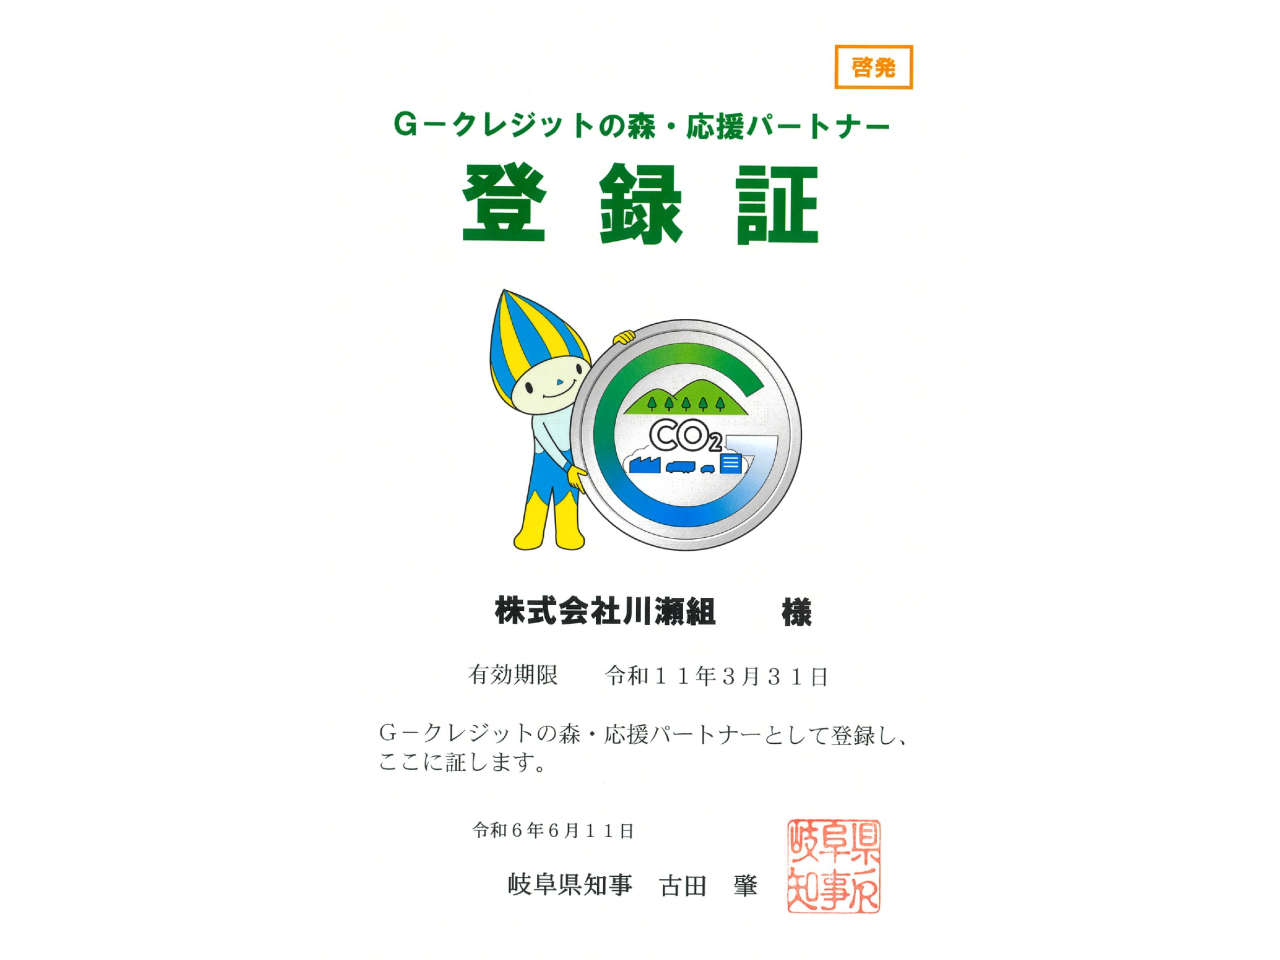 岐阜県よりGクレジットの森・応援パートナーの登録証を頂きました。G－クレジットの購入や普及啓発を通して県の森林づくりを応援していきます。